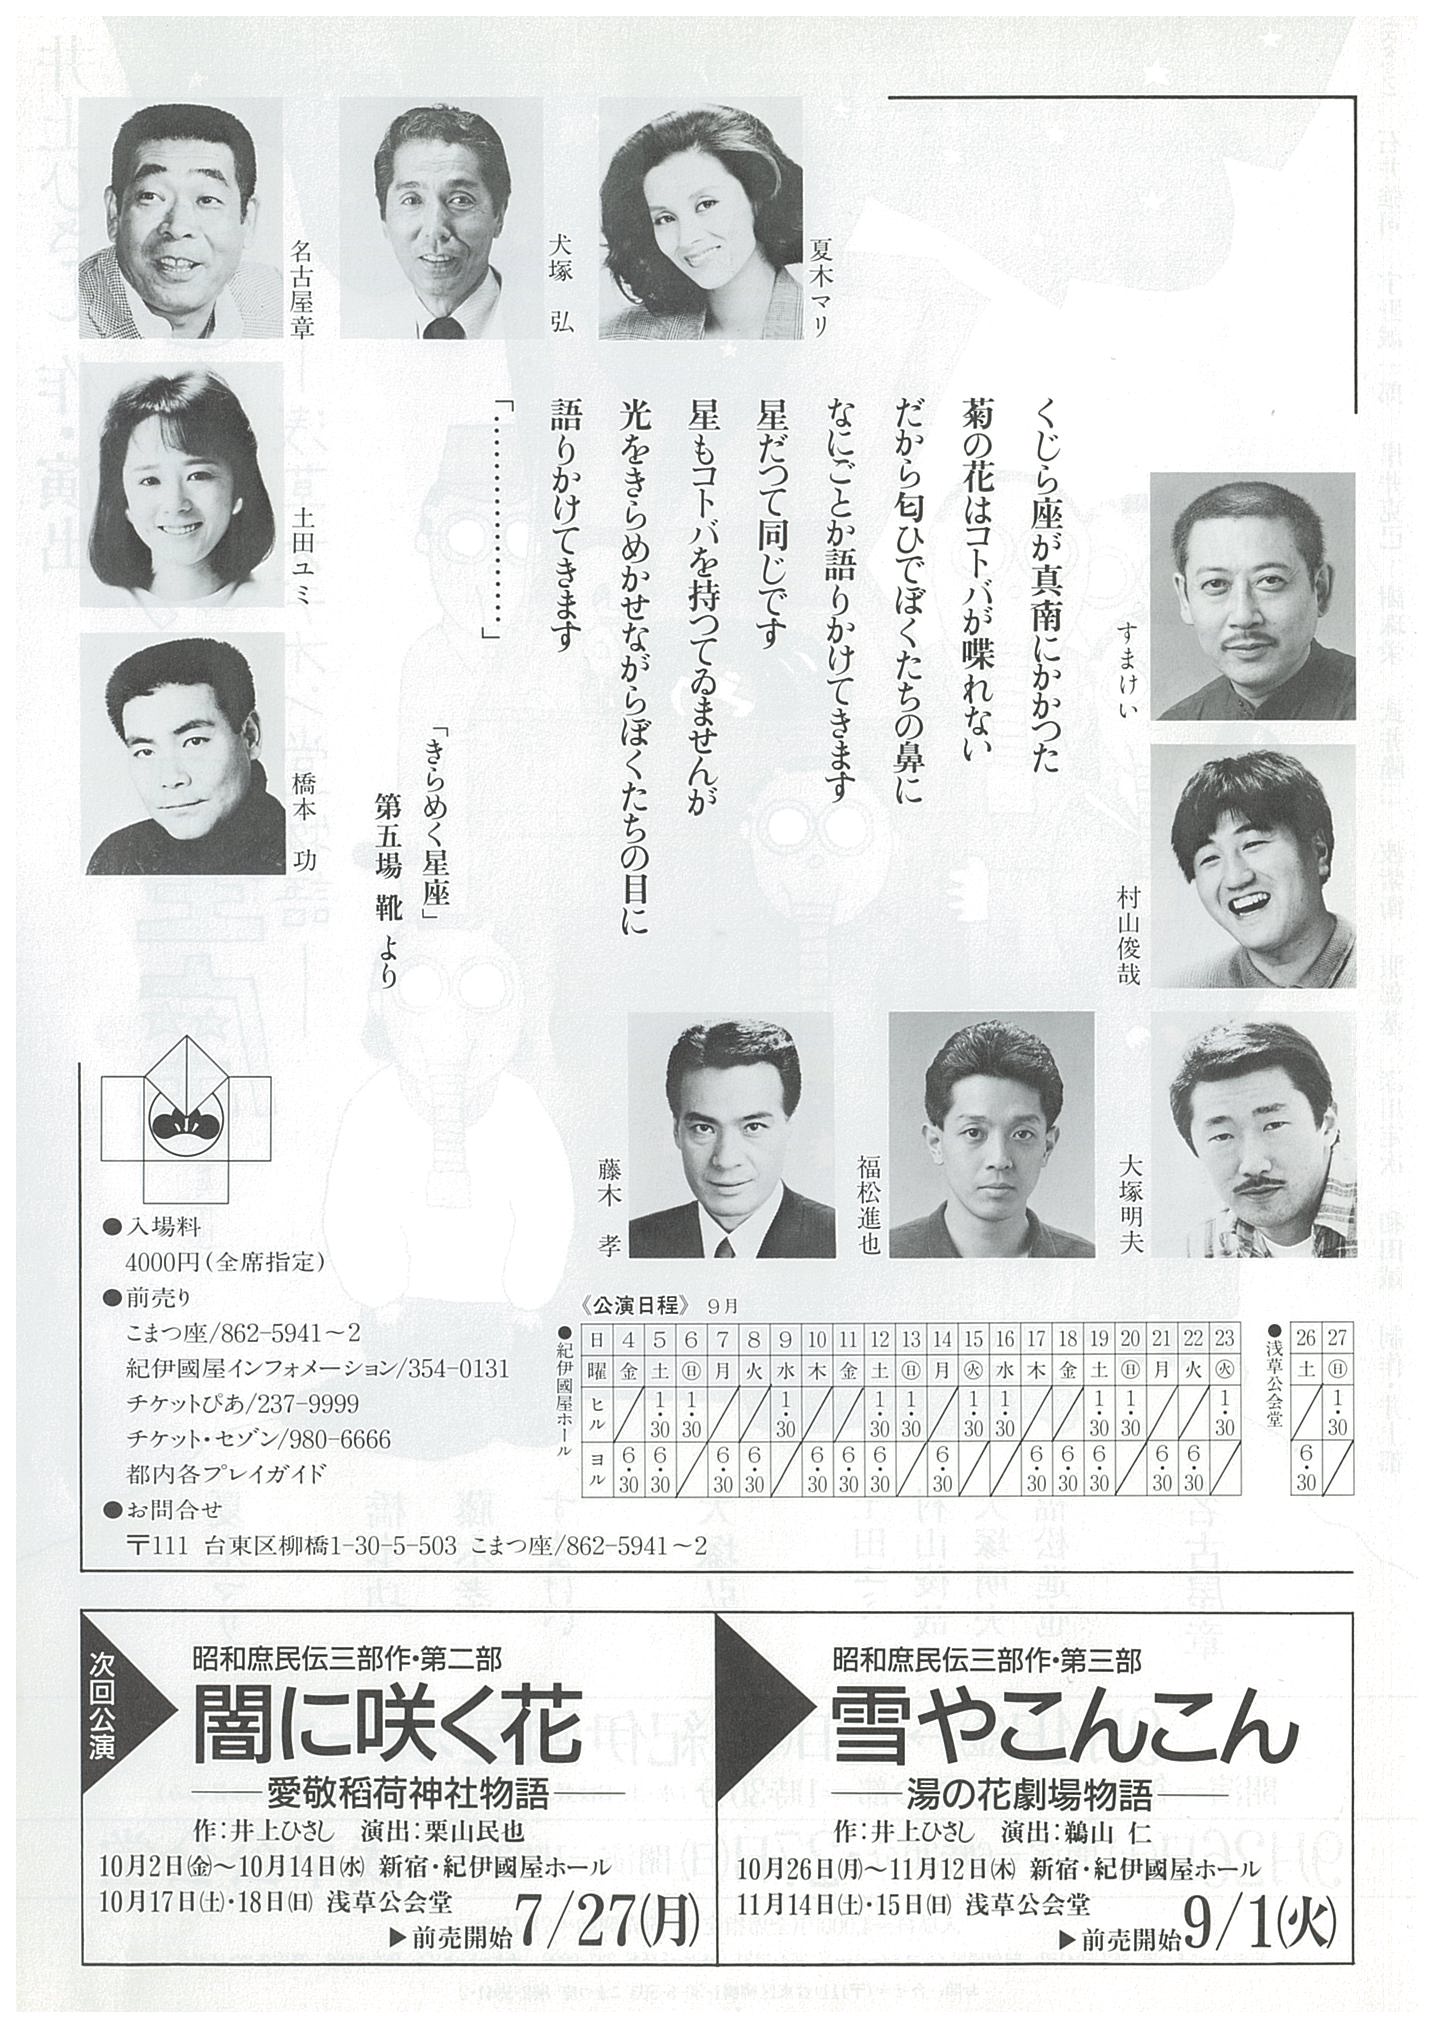 きらめく星座　―浅草オデオン堂物語― (1987 ver)